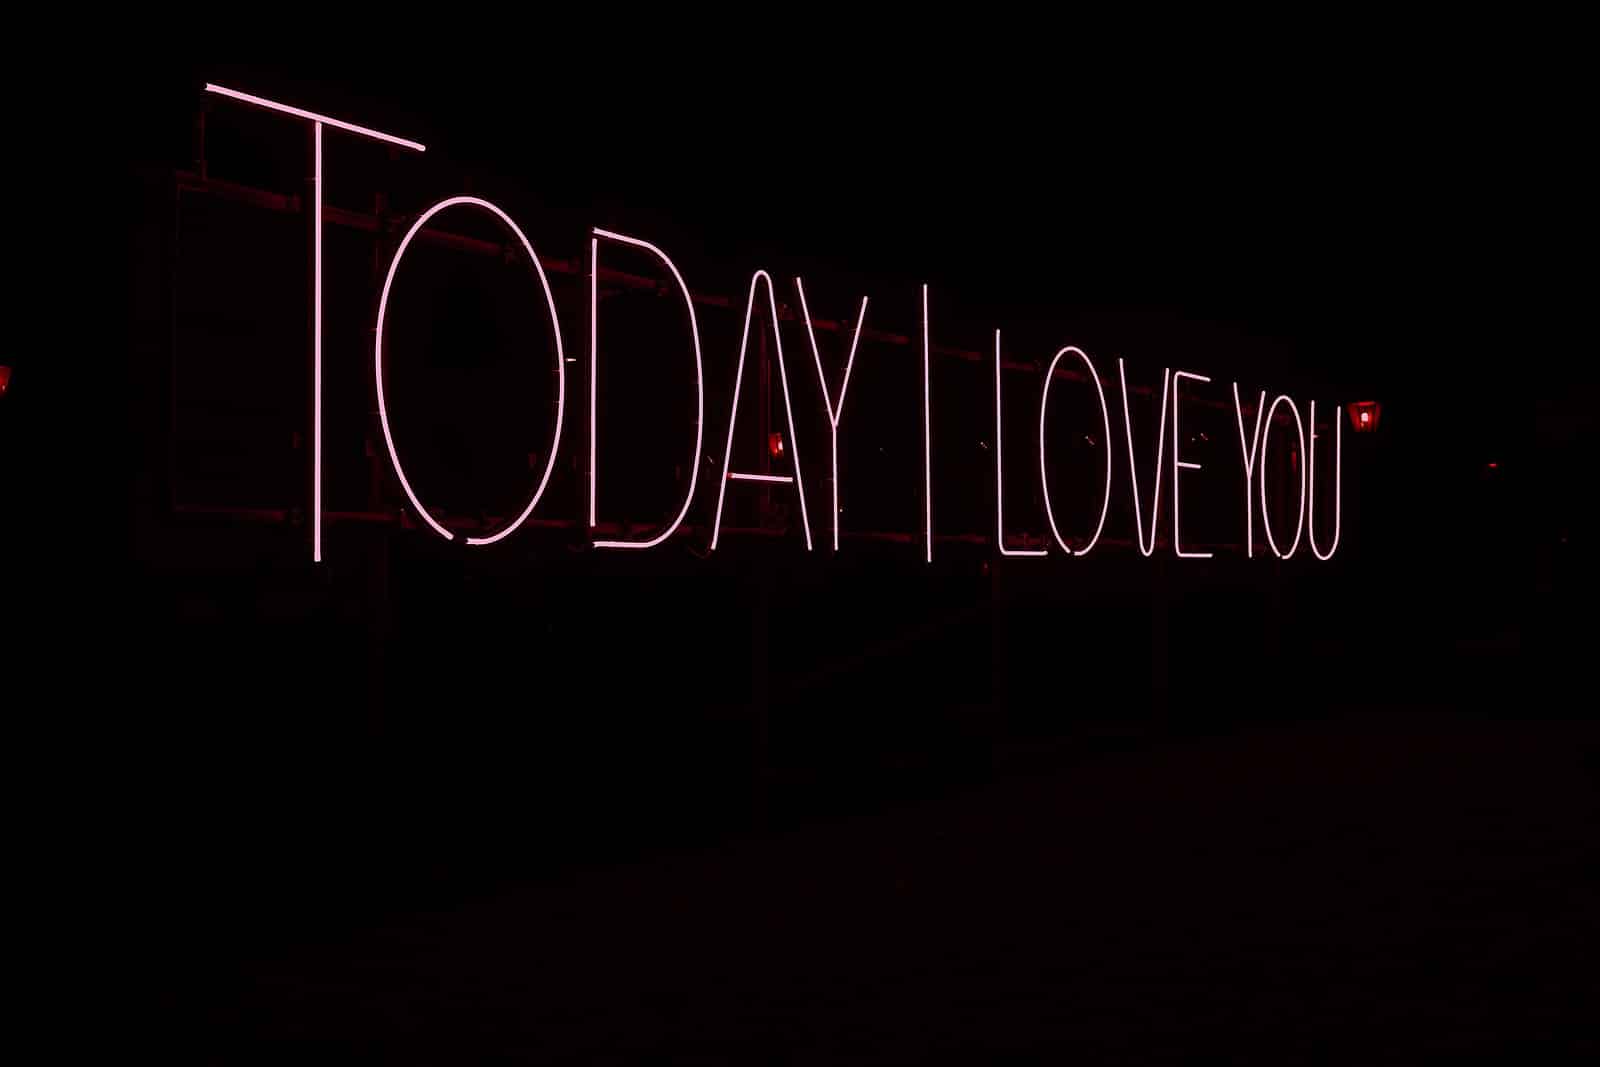 Today I Love You LED signage